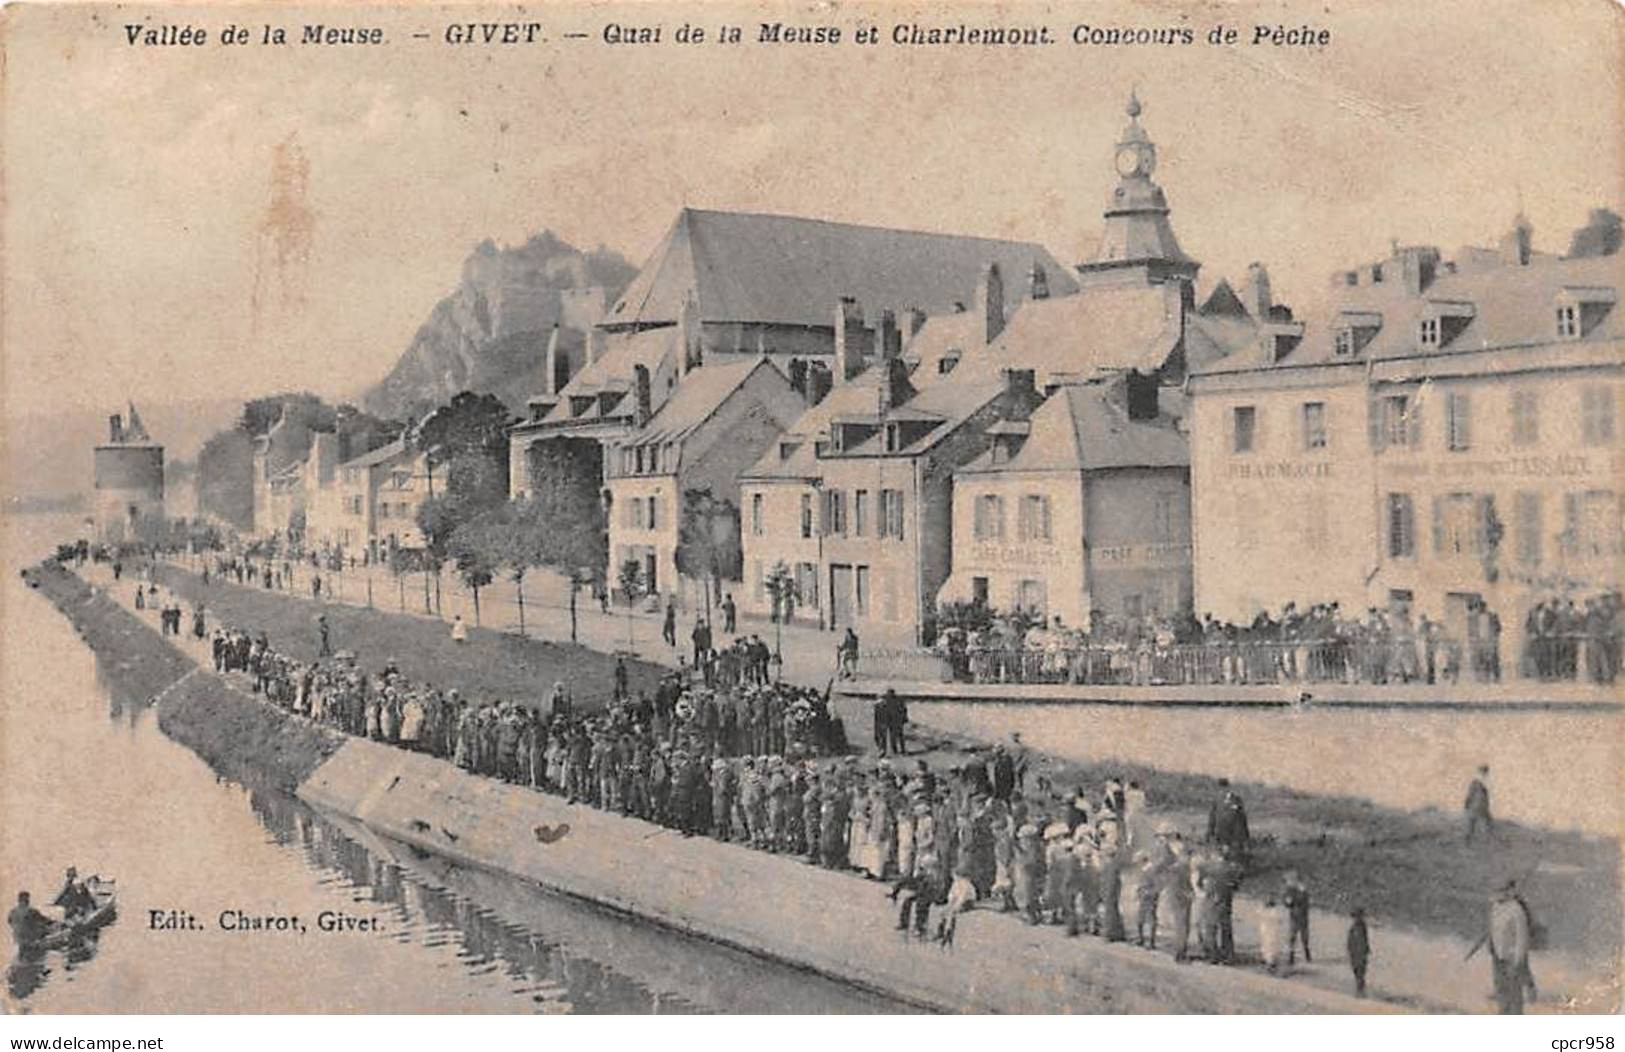 08 - GIVET - SAN58073 - Quai De La Meuse Et Charlemont - Concours De Pêche - Givet